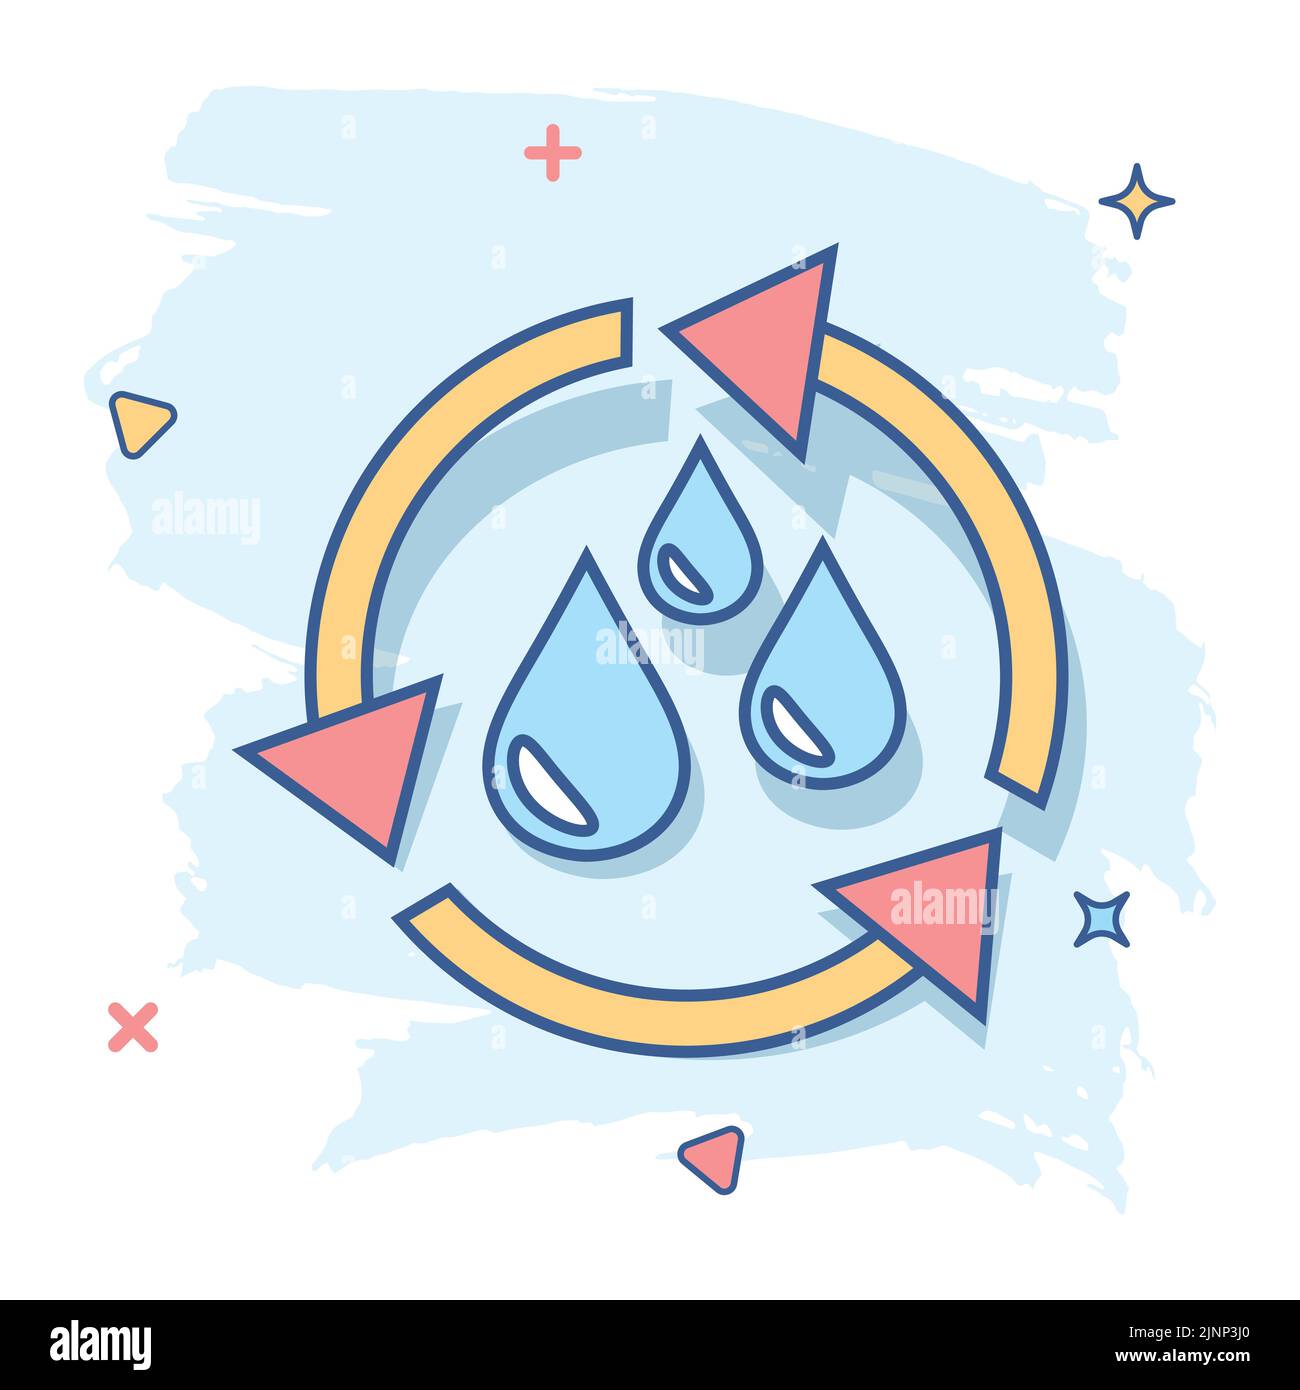 Vektor cartoon Wasserkreislauf Symbol im Comic-stil. Recycling Zeichen Abbildung Piktogramm. Ökologie business splash Wirkung Konzept. Stock Vektor